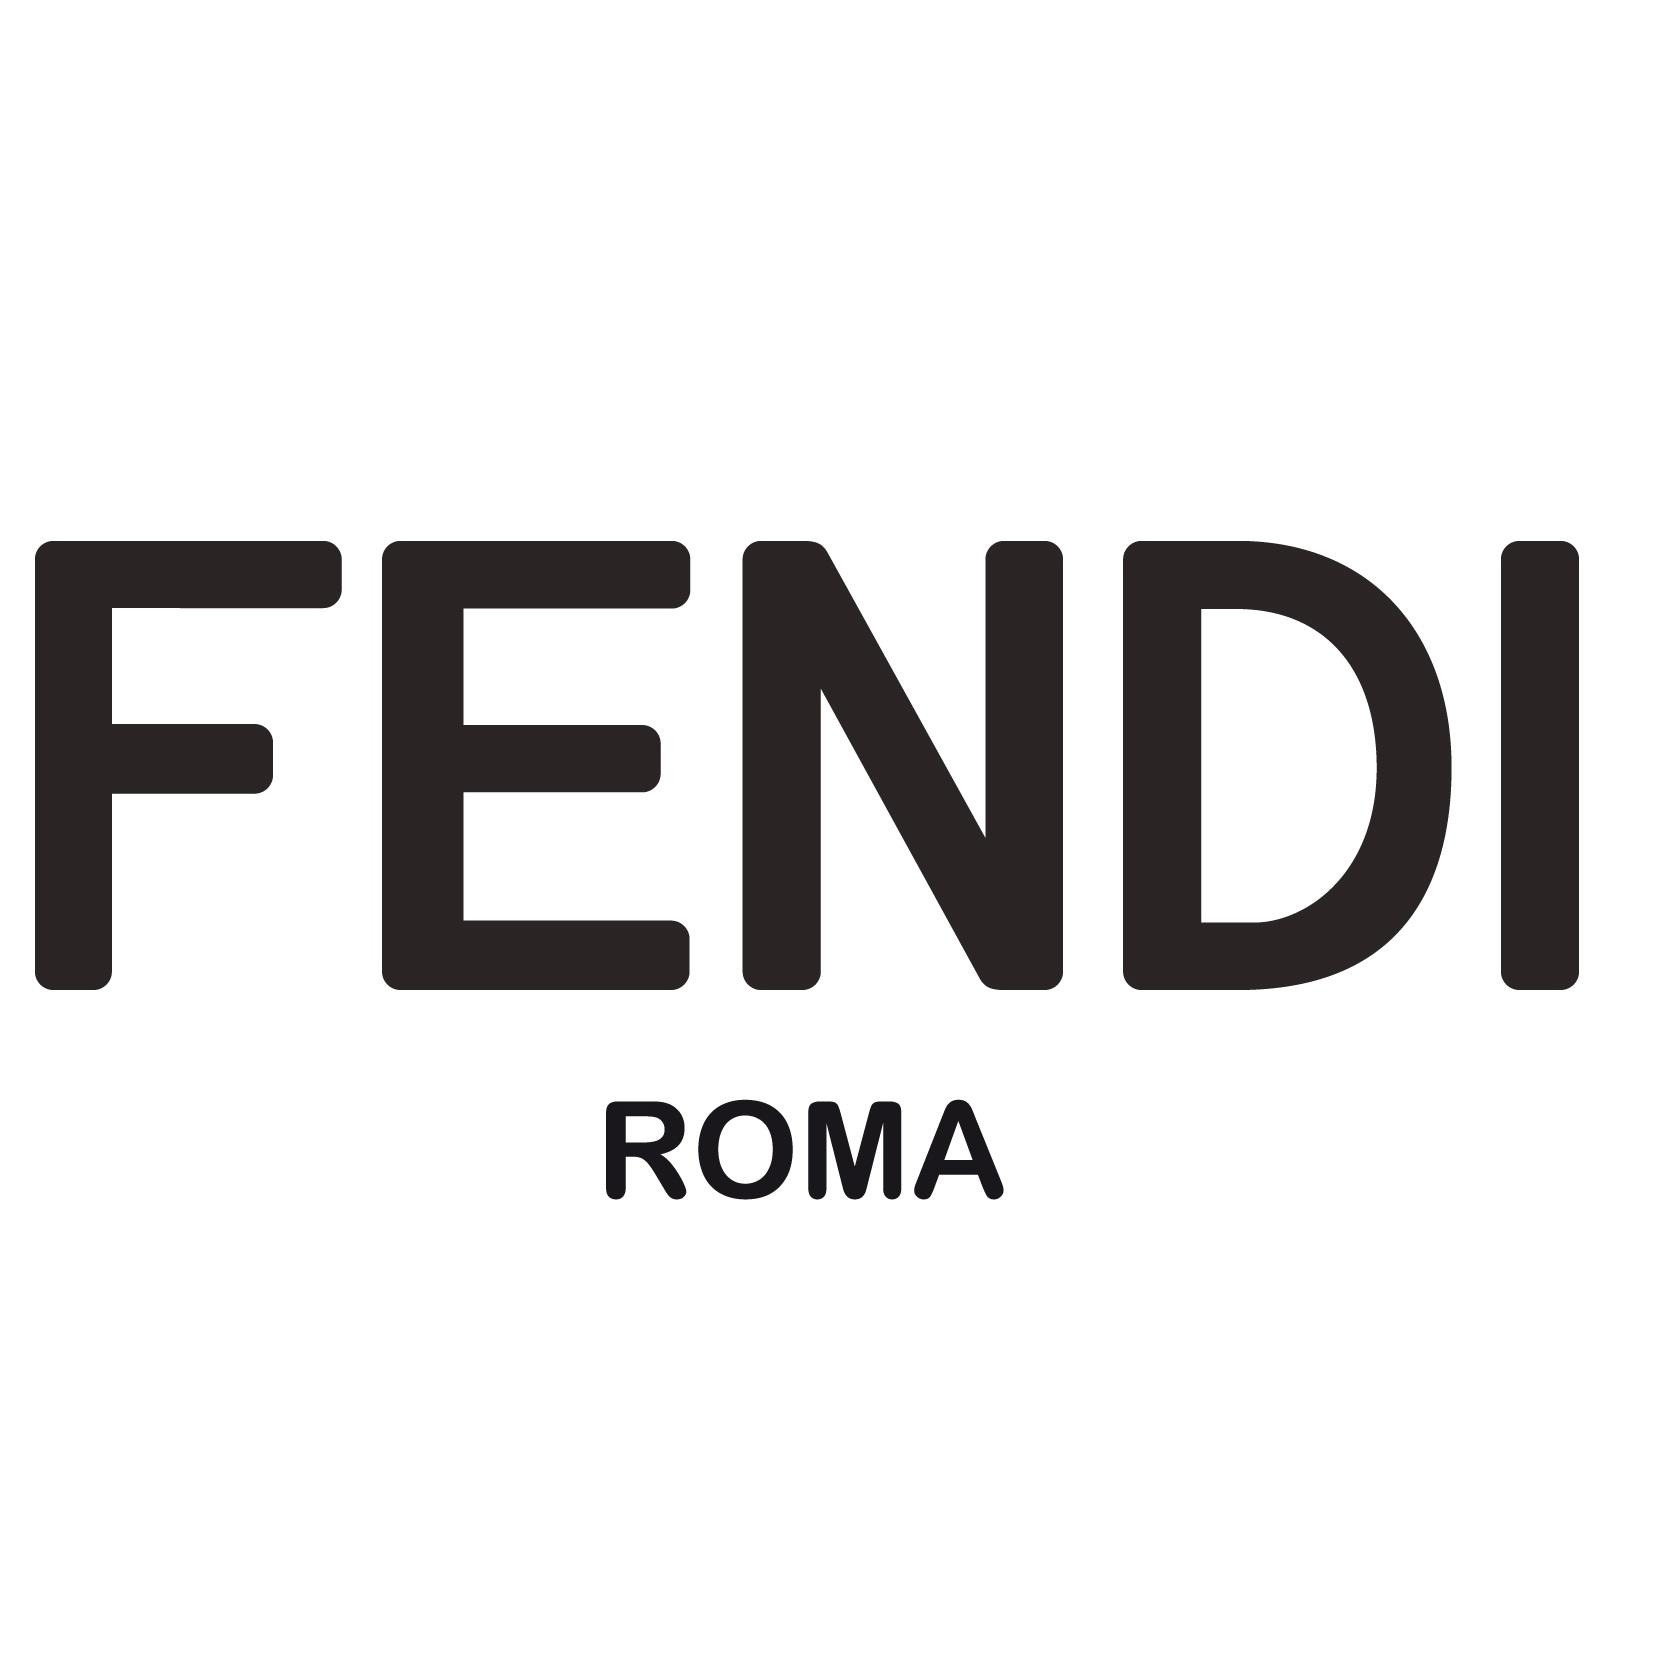 Fendi Toronto Bloor Holt Renfrew - Leather Goods Retailers